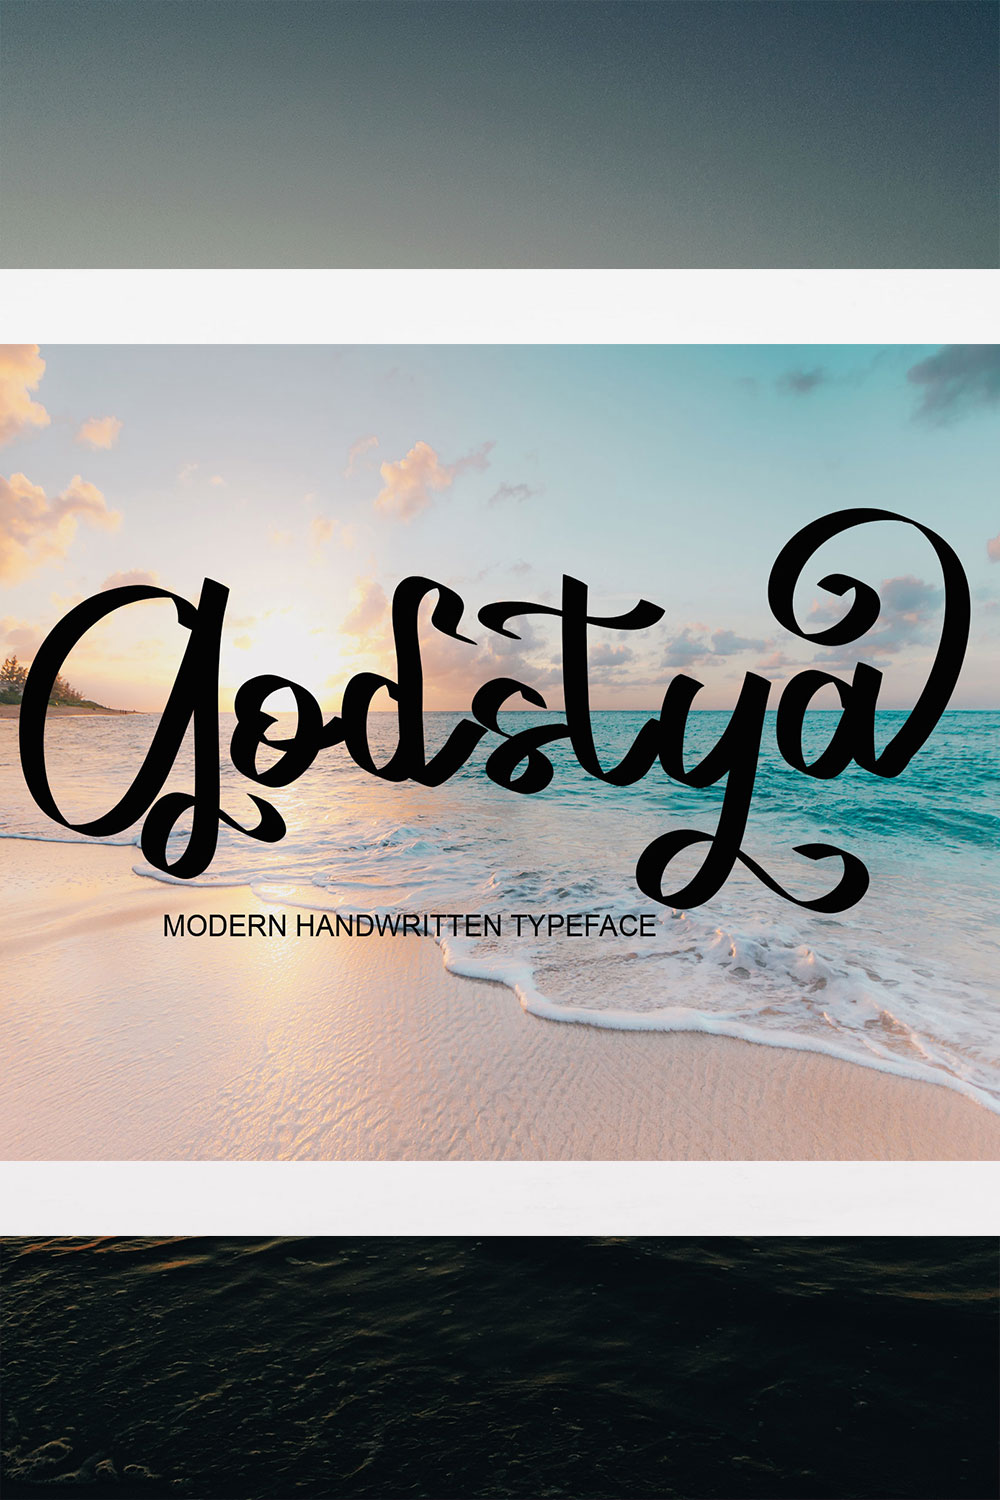 Godstya Signature Font Pinterest image.